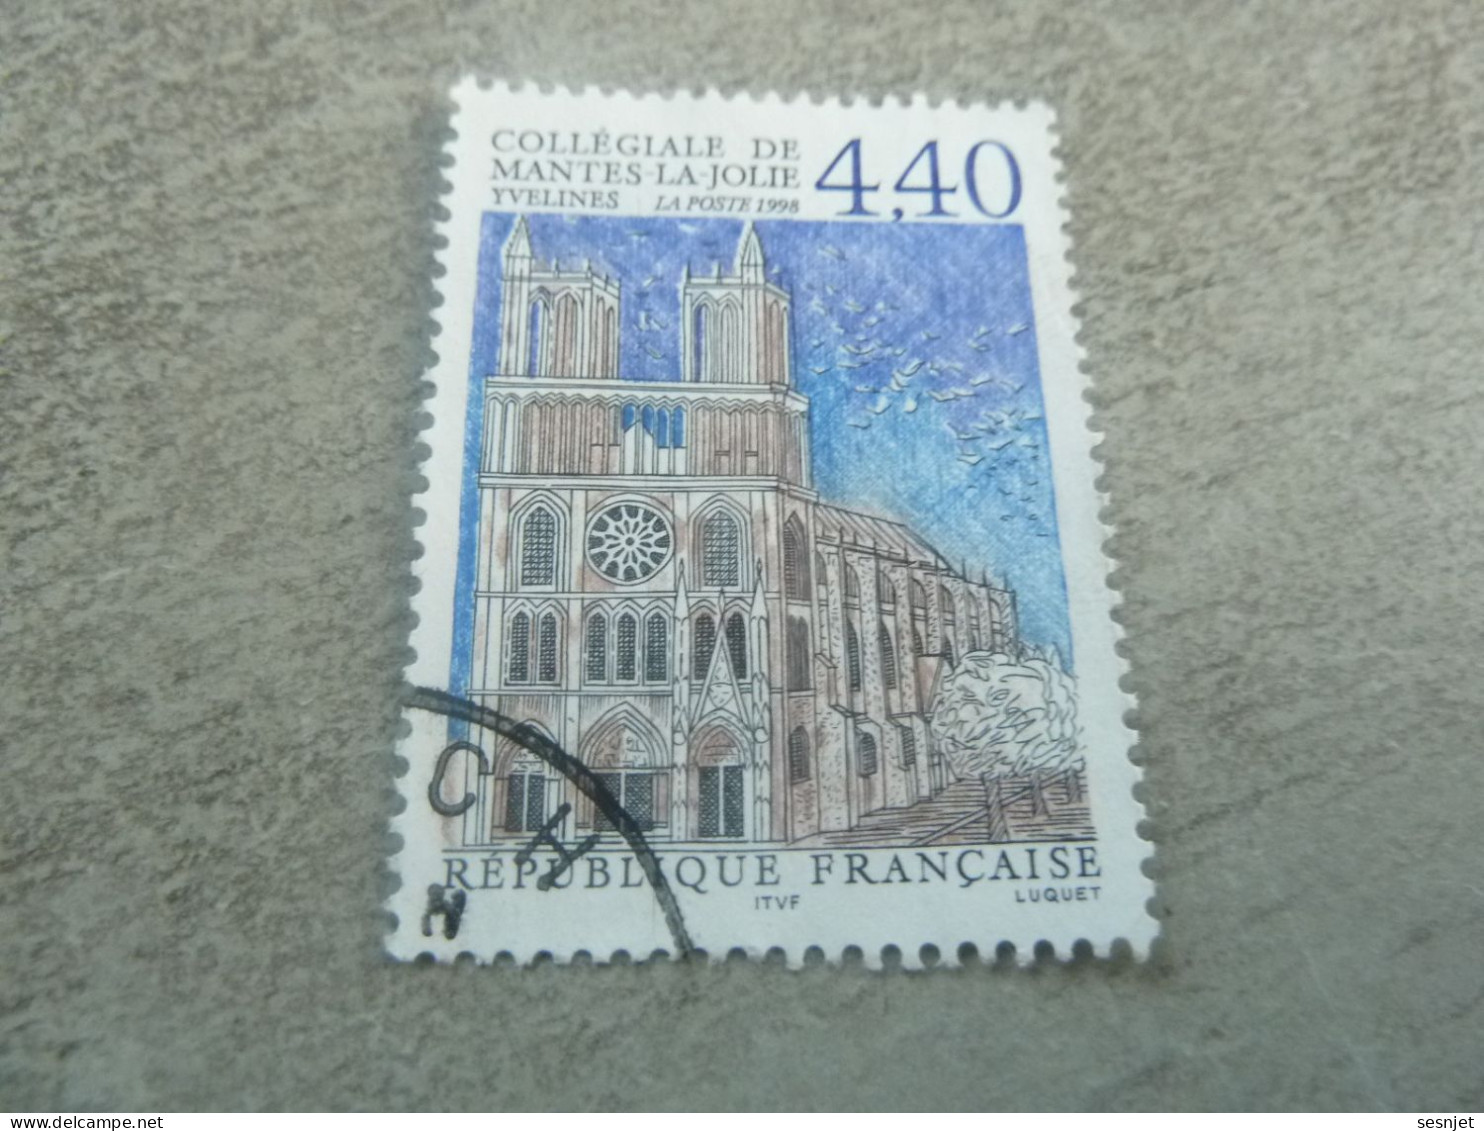 Mantes-la-Jolie - La Collégiale - 4f.40 - Yt 3180 - Multicolore - Oblitéré - Année 1998 - - Used Stamps